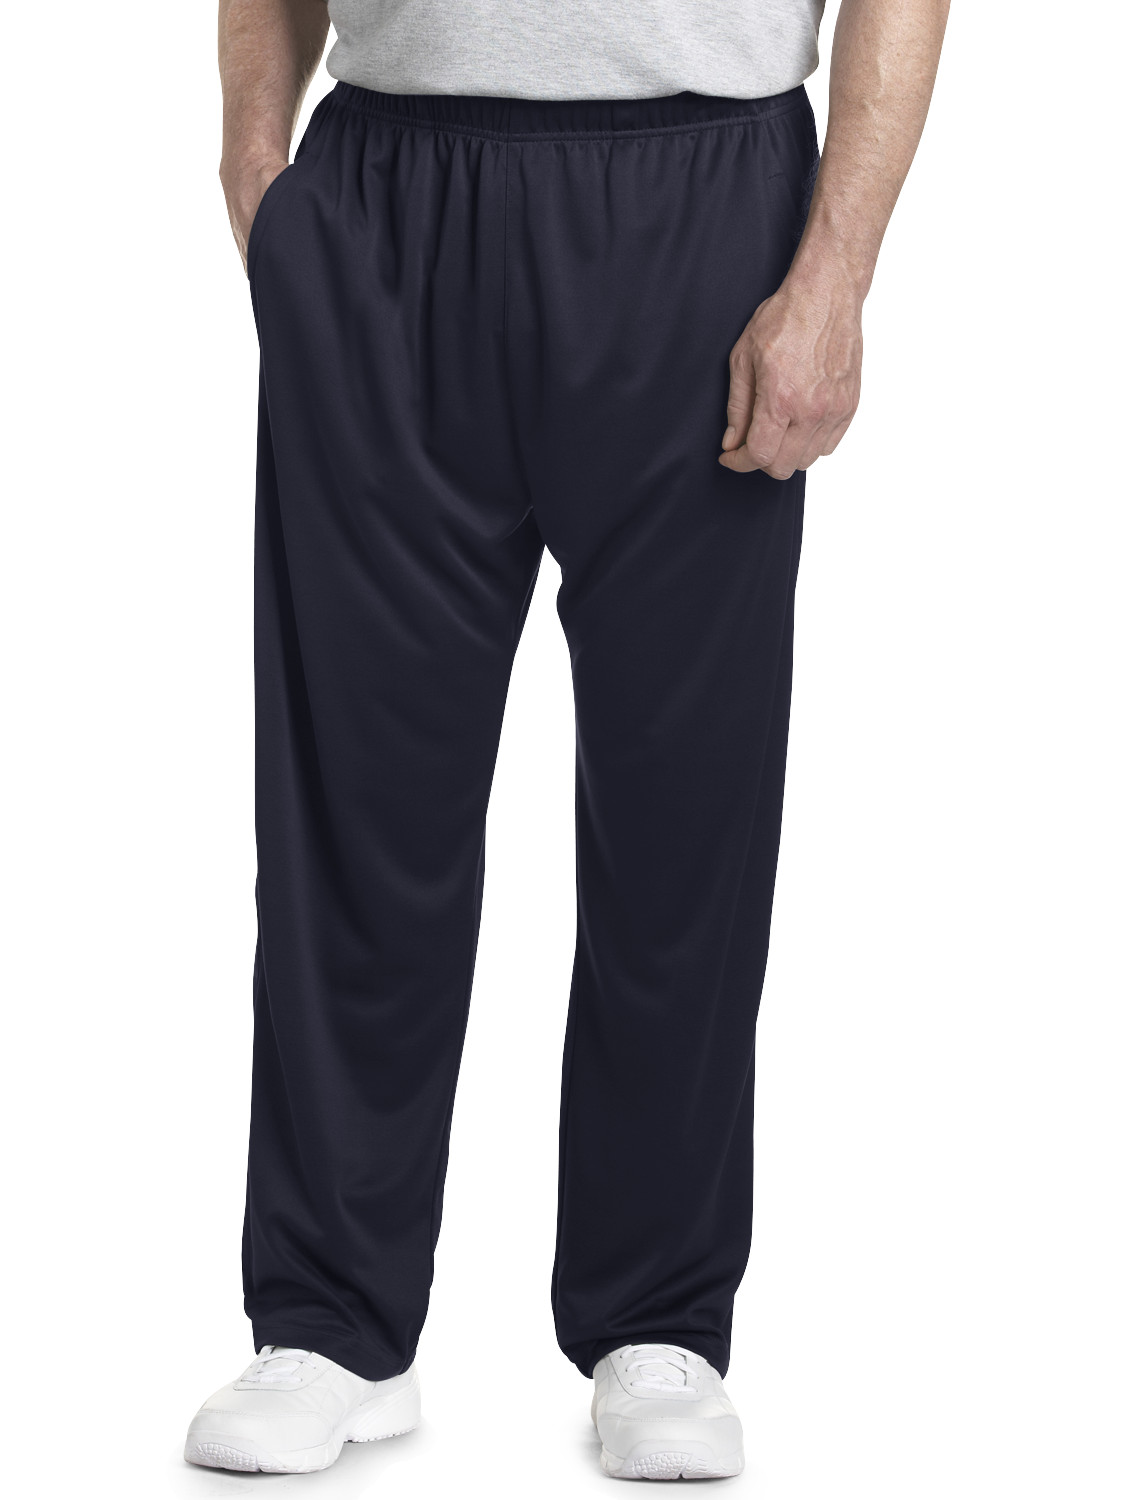 Reebok PlayDry Knit Pants Casual Male XL Big & Tall | eBay